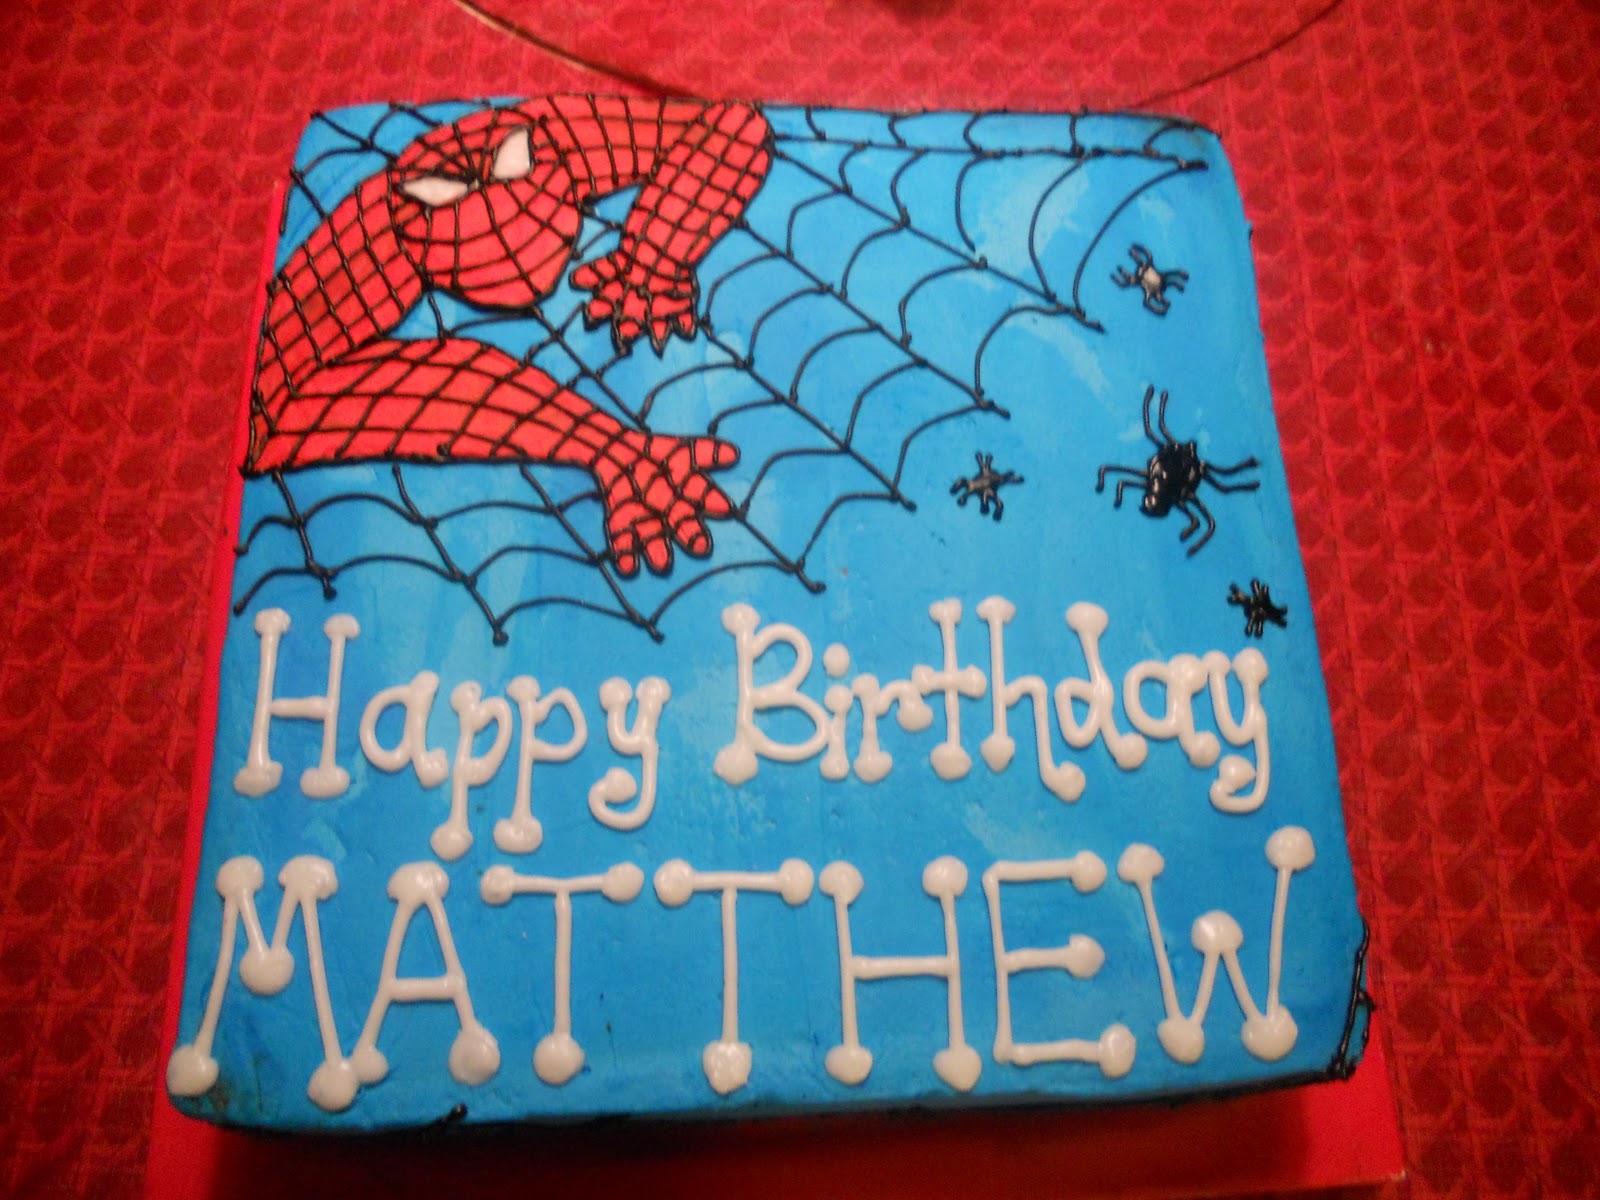 Happy Birthday Matthew Cake